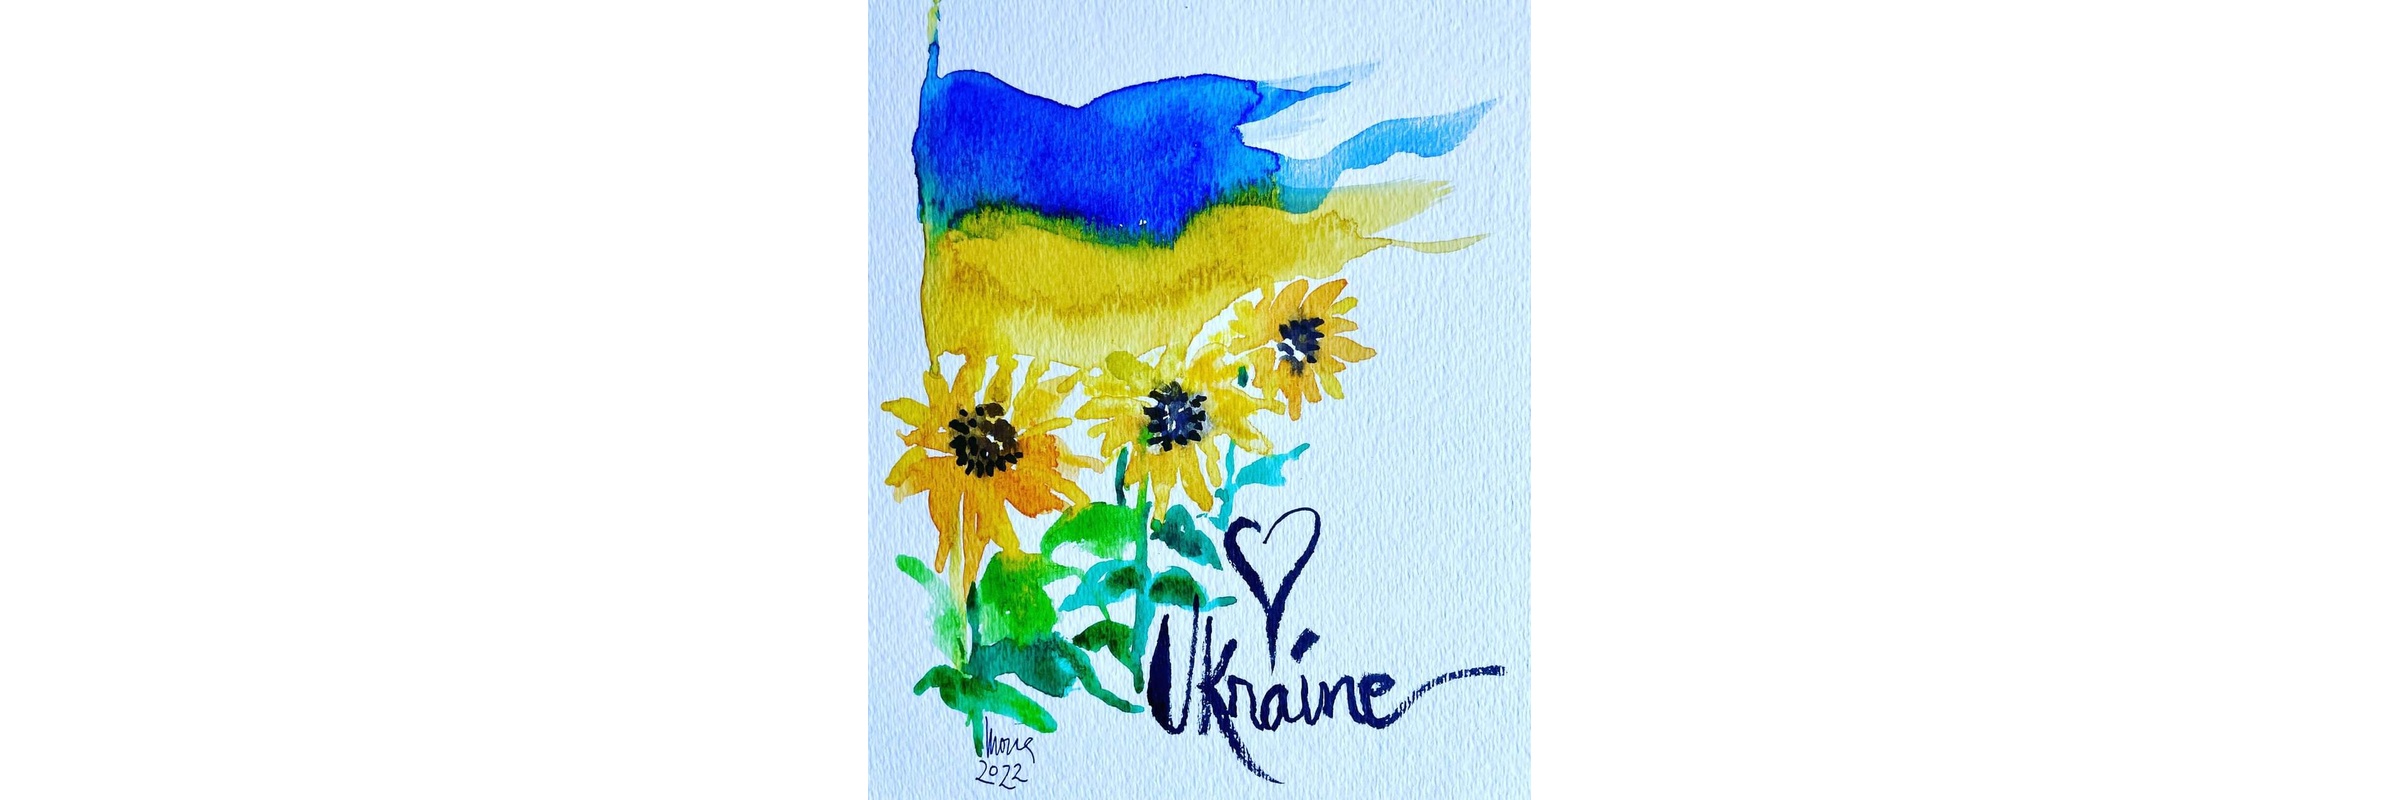 World Children's Choir - Heart Songs ~ Love Songs from the World for the children of Ukraine Benefit Concert